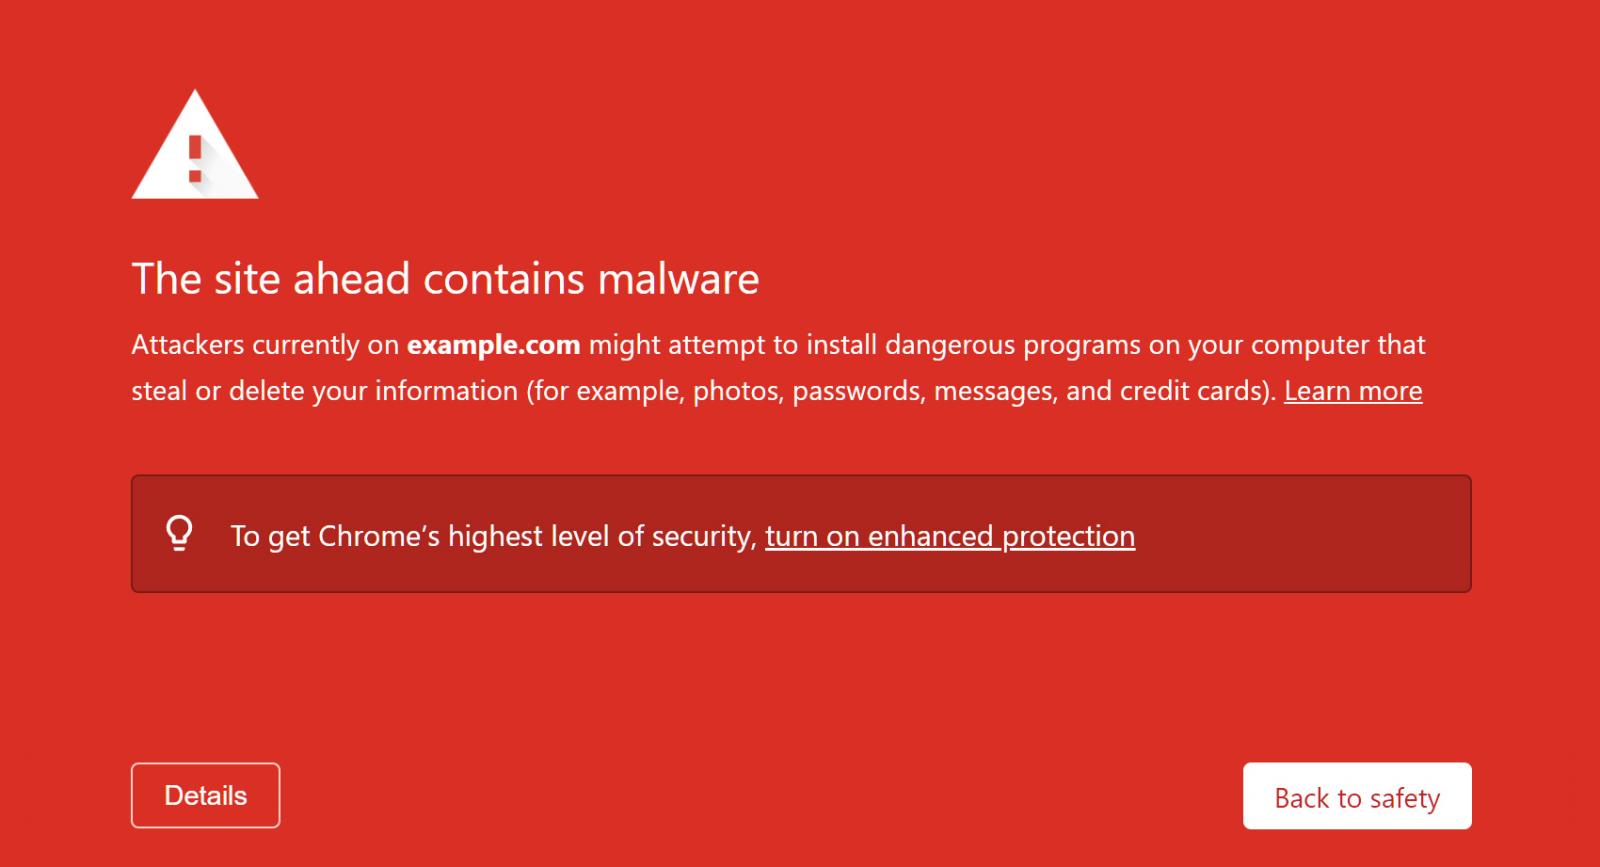 Google Safe Browsing malware alert